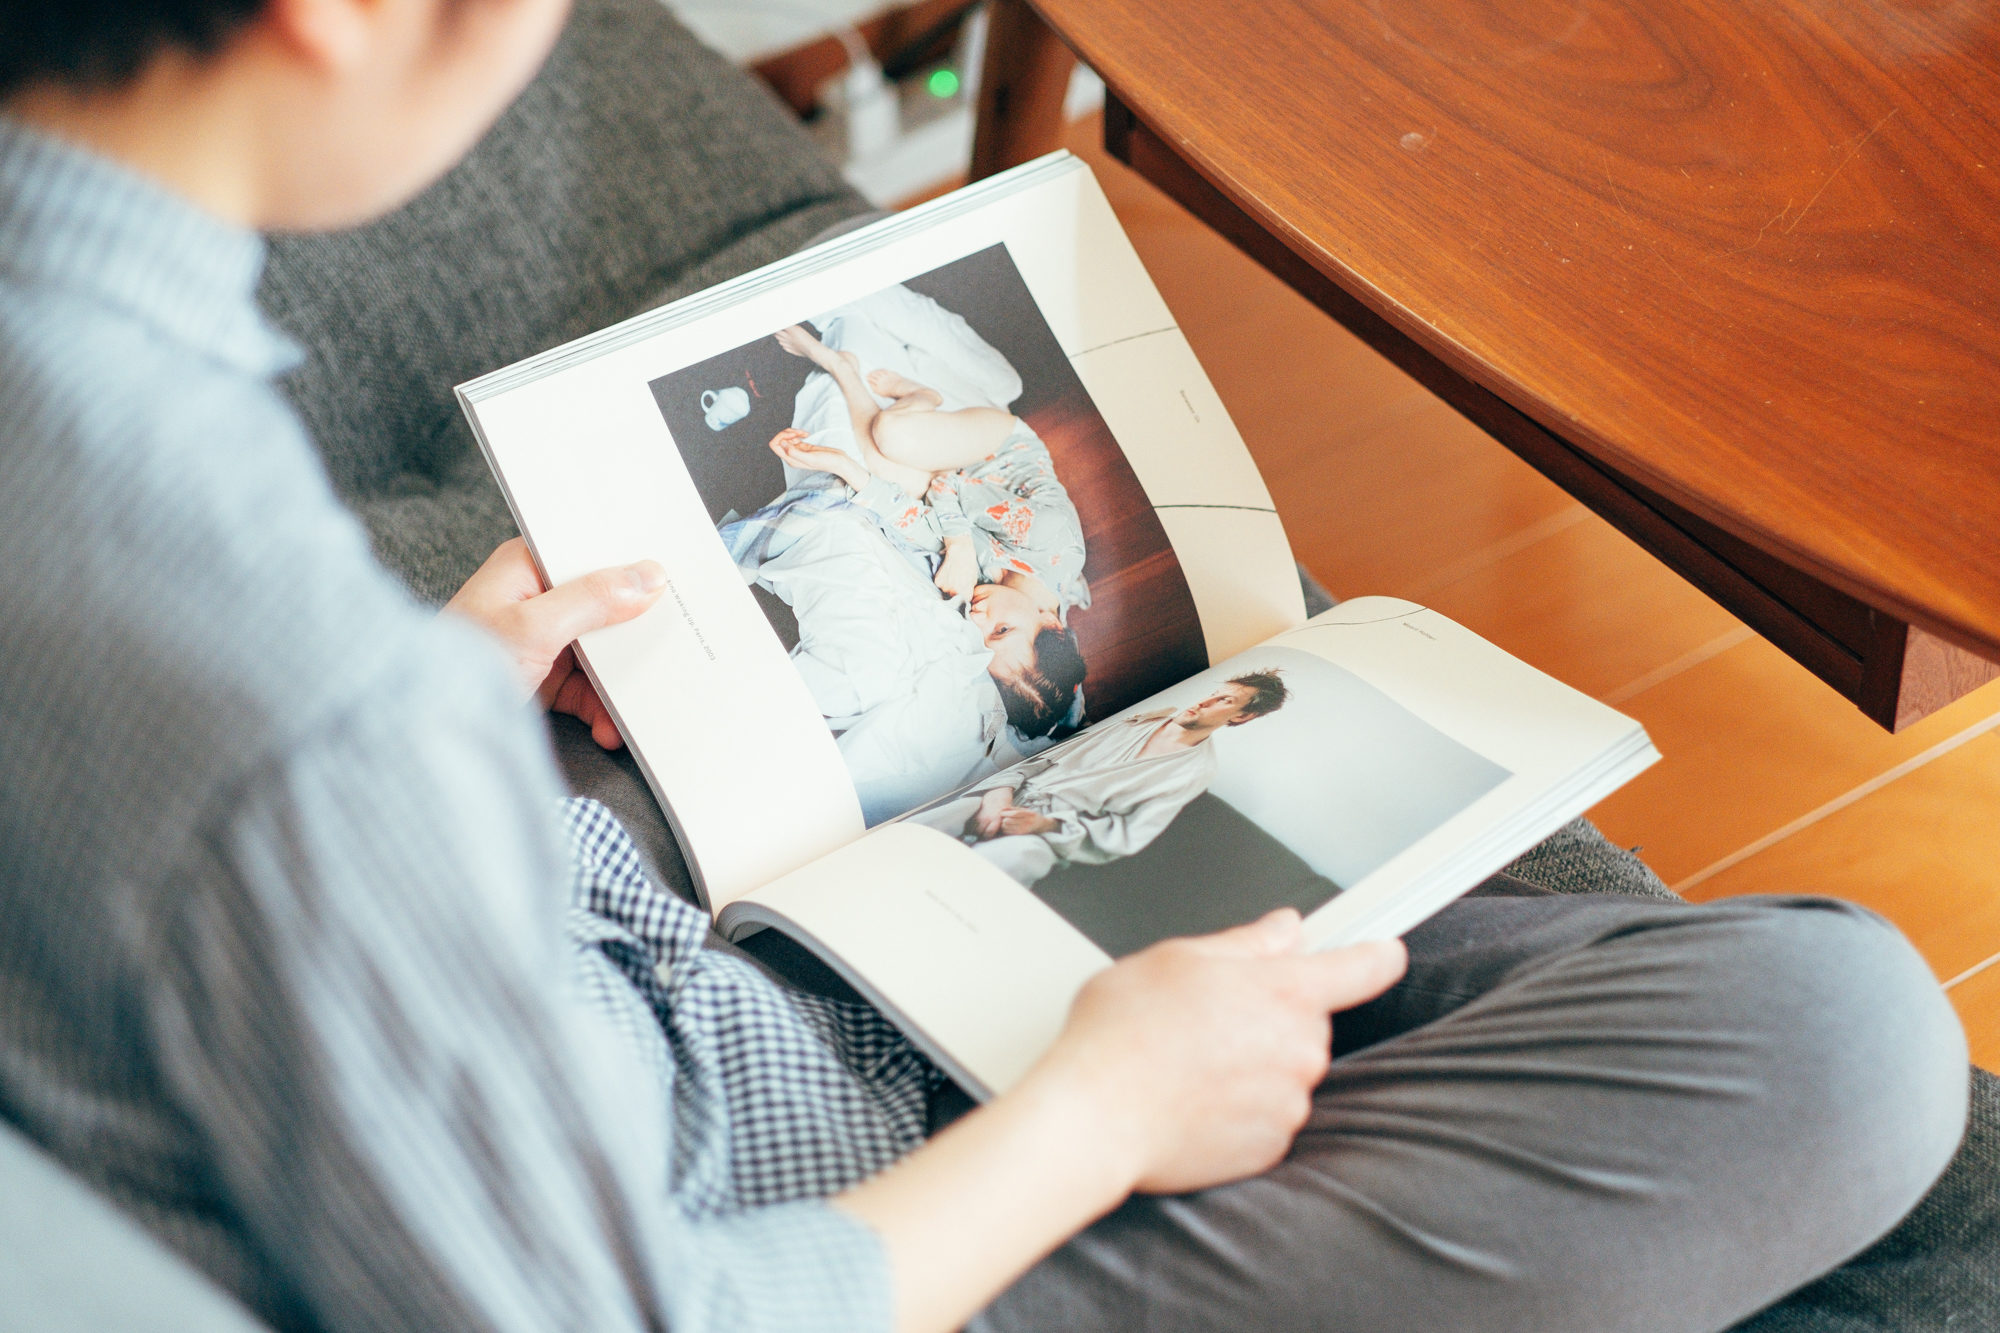 お気に入りだと話す、西山勲さんが世界中のアーティストのスタジオを取材した写真雑誌『Studio Journal Knock』。この雑誌、私も大好きで昔から集めています。インタビューも写真も素敵な雑誌です。